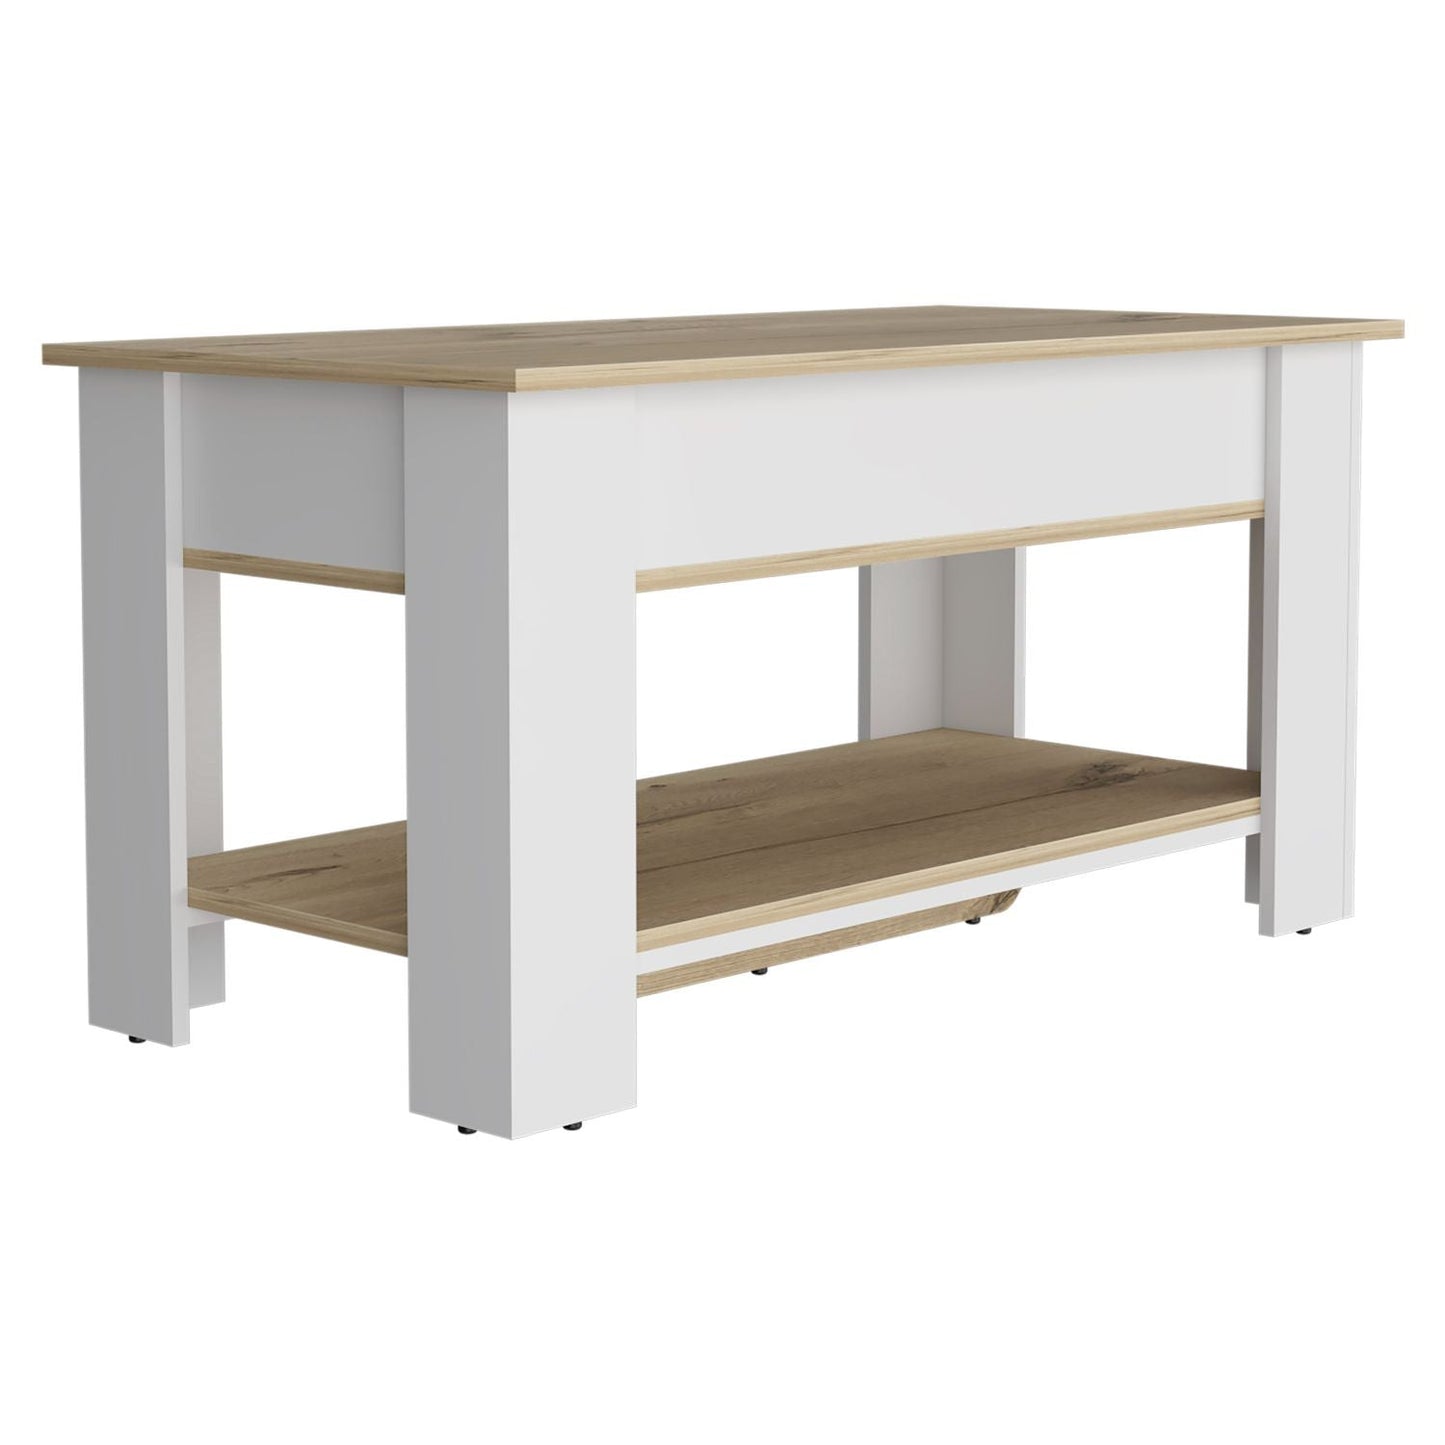 Storage Table Polgon, Extendable Table Shelf, Lower Shelf, Light Oak / White Finish-6